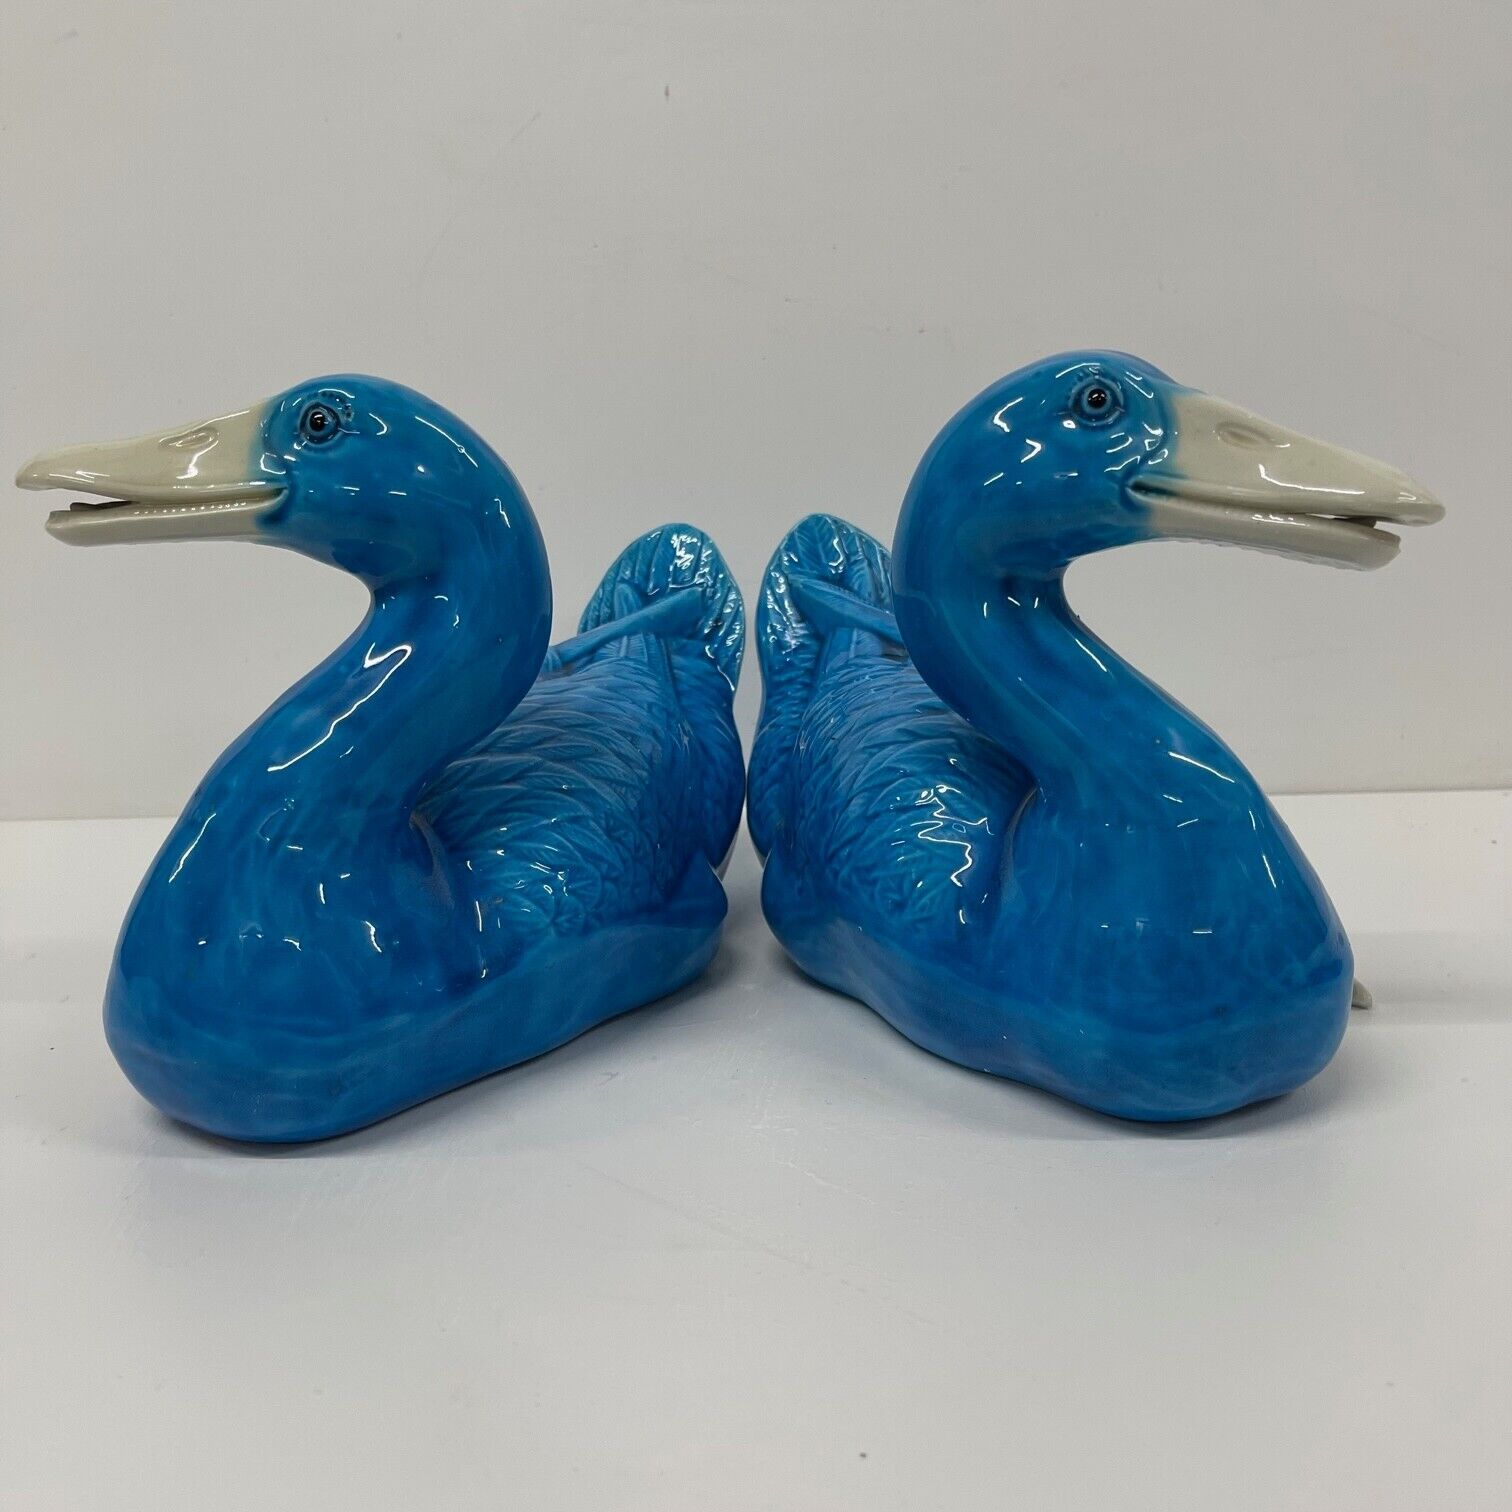 Pair Vintage Ceramic Ducks Blue Decorative mid century